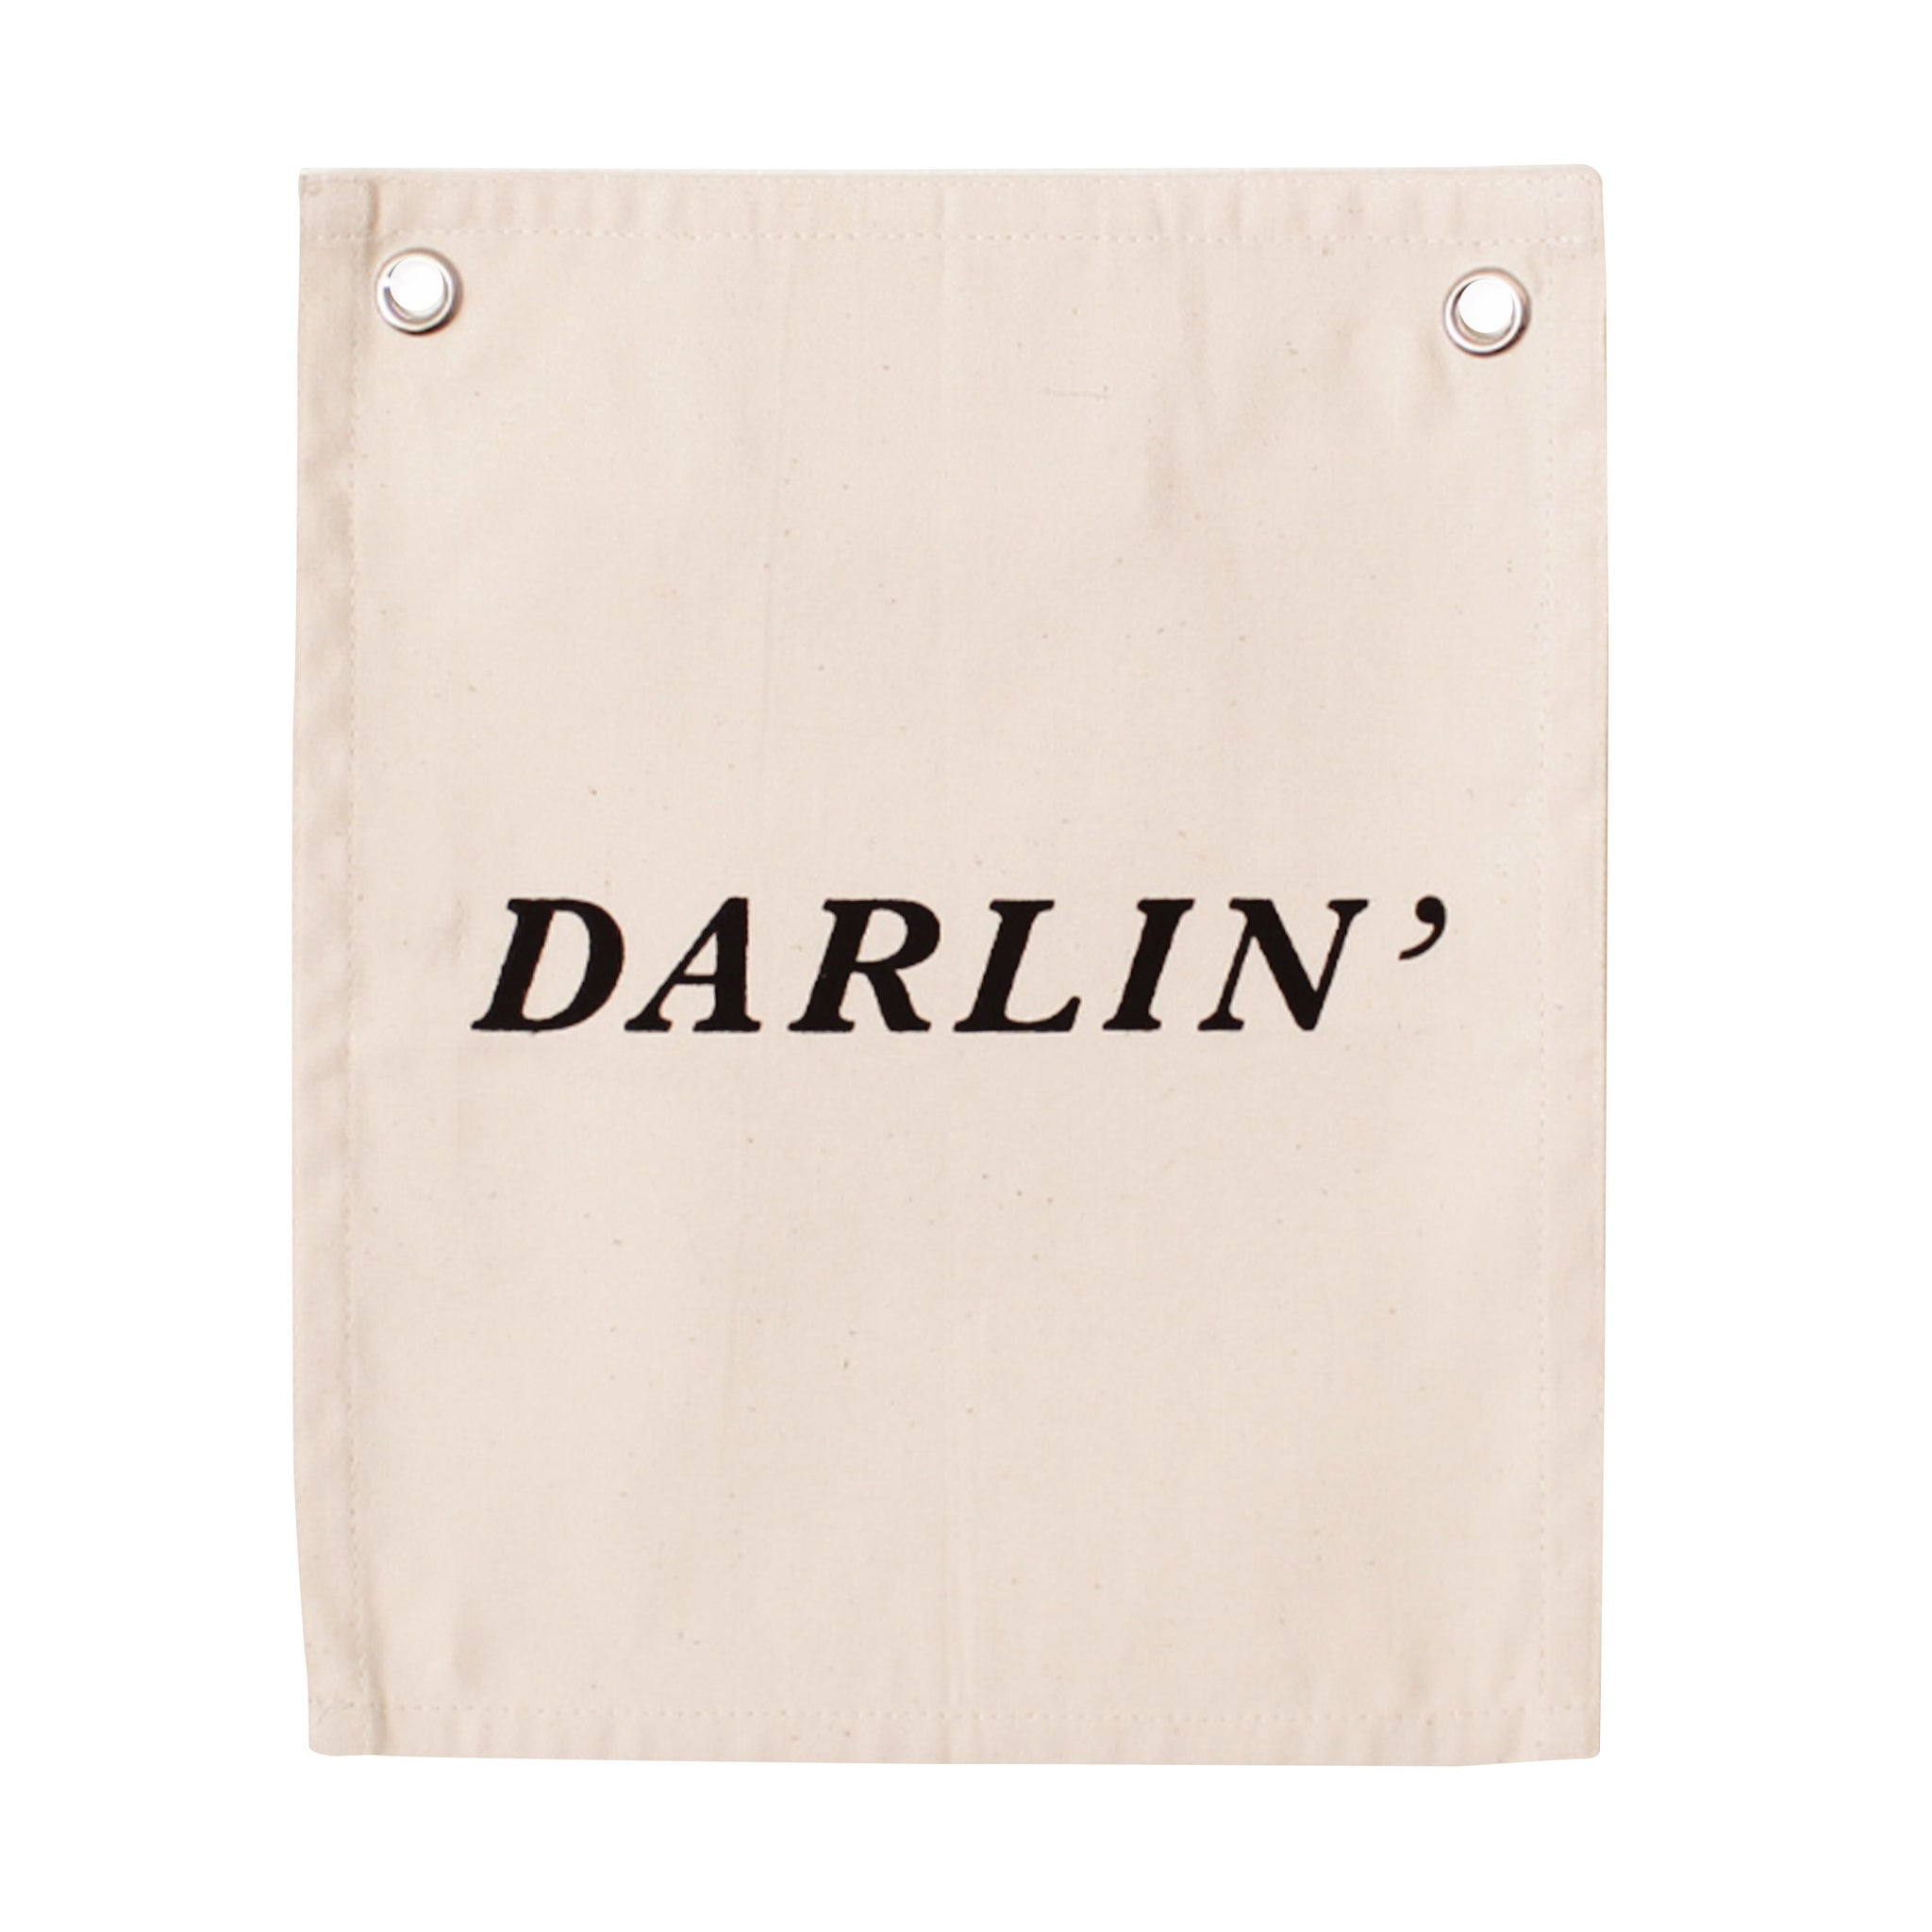 darlin' banner